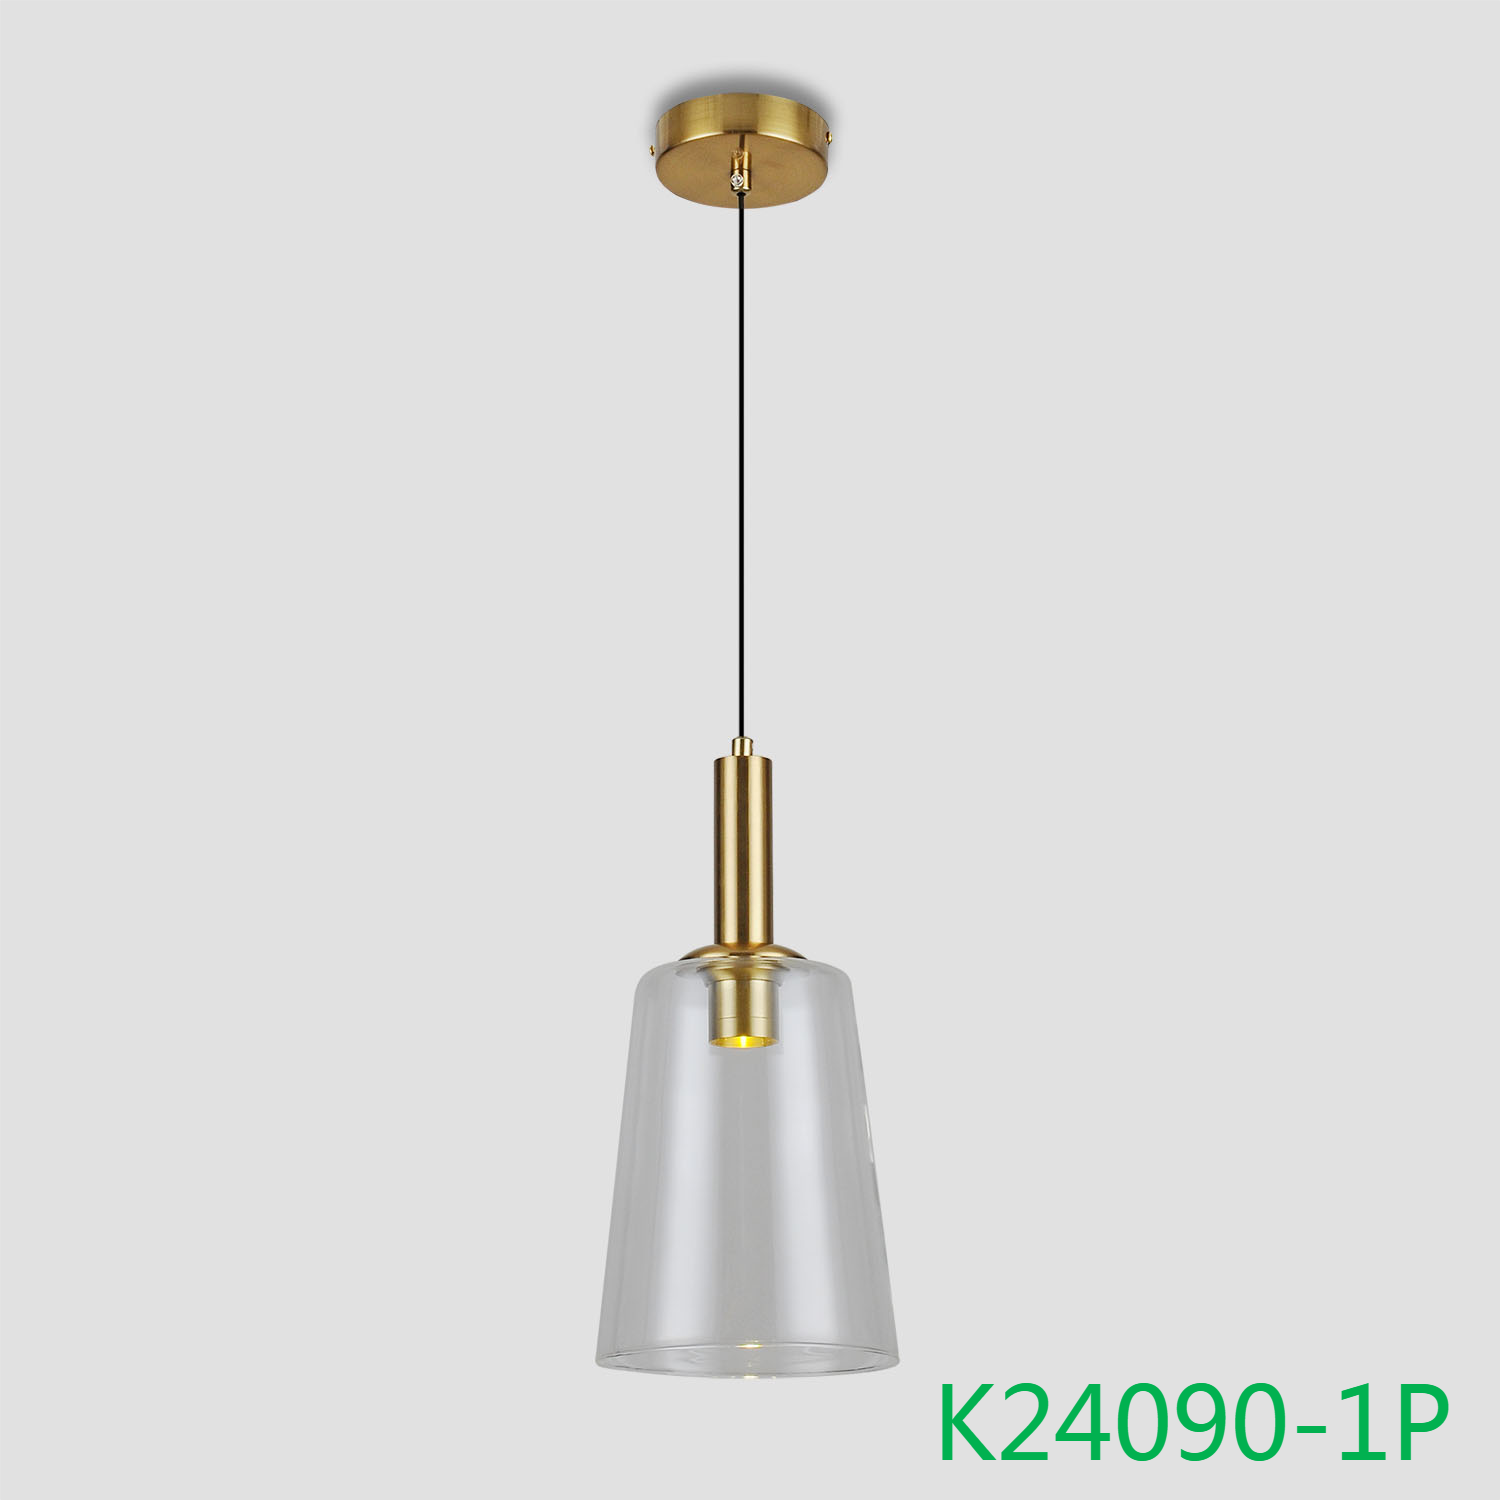 K24090-1P